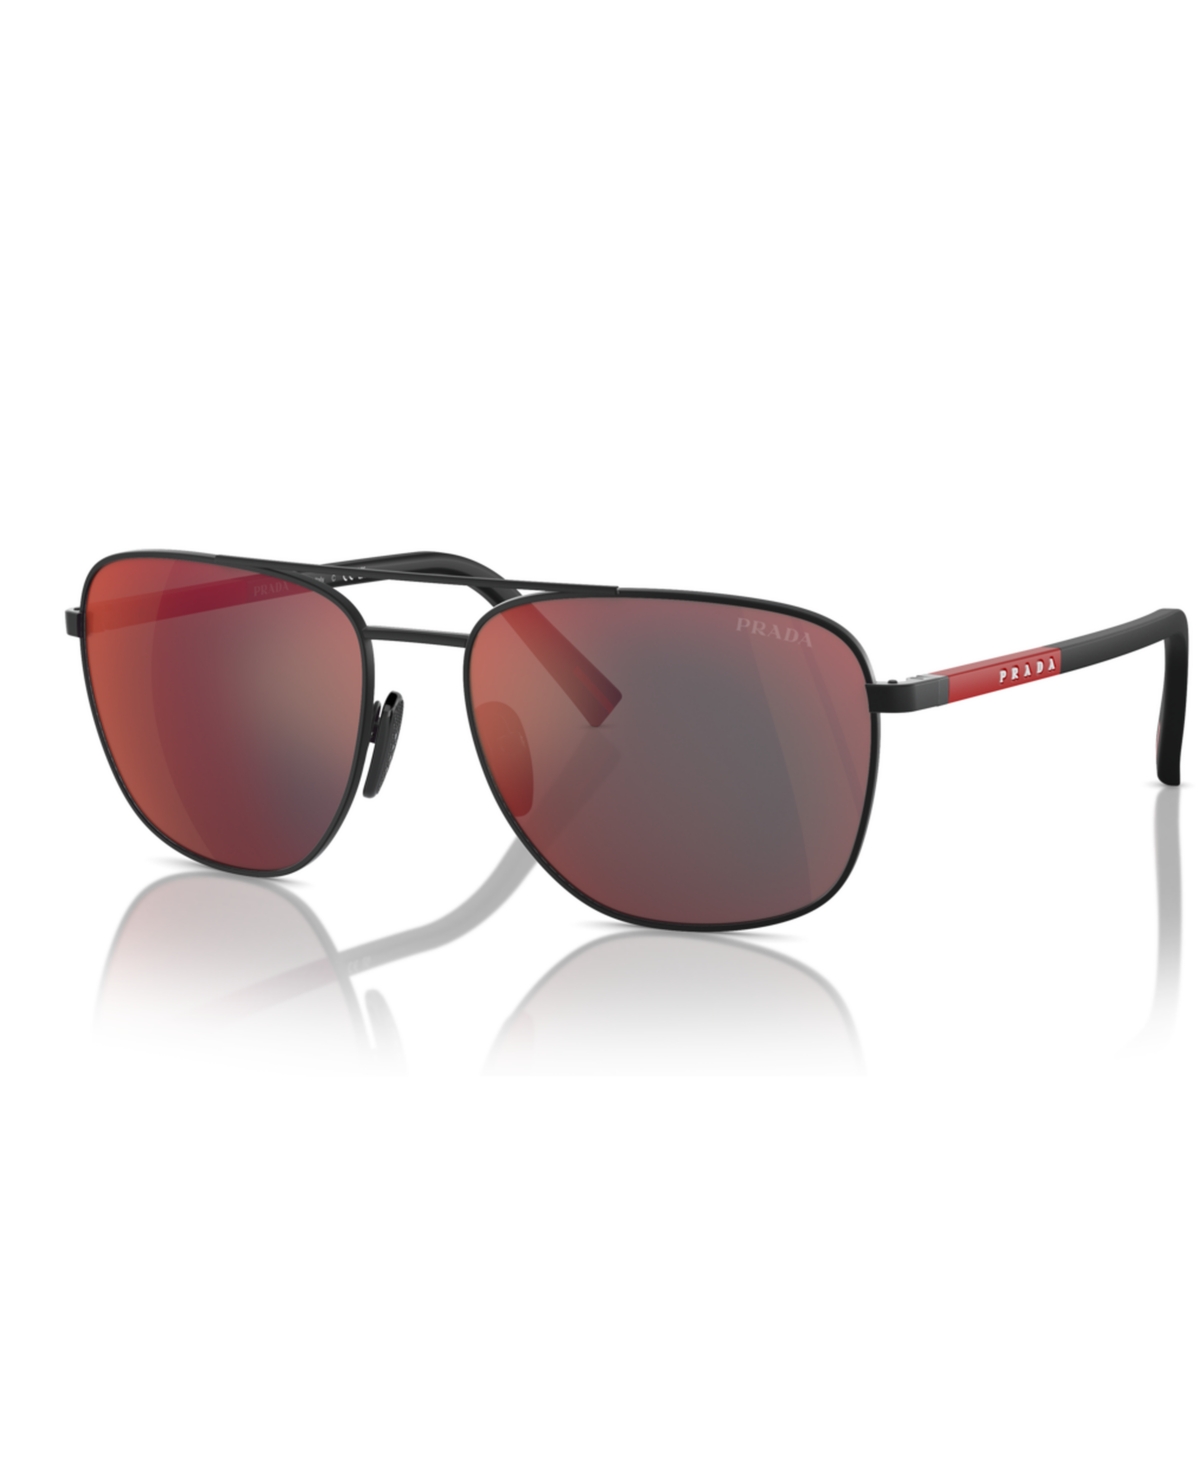 Men's Sunglasses, Ps 54ZS - Black Rubb